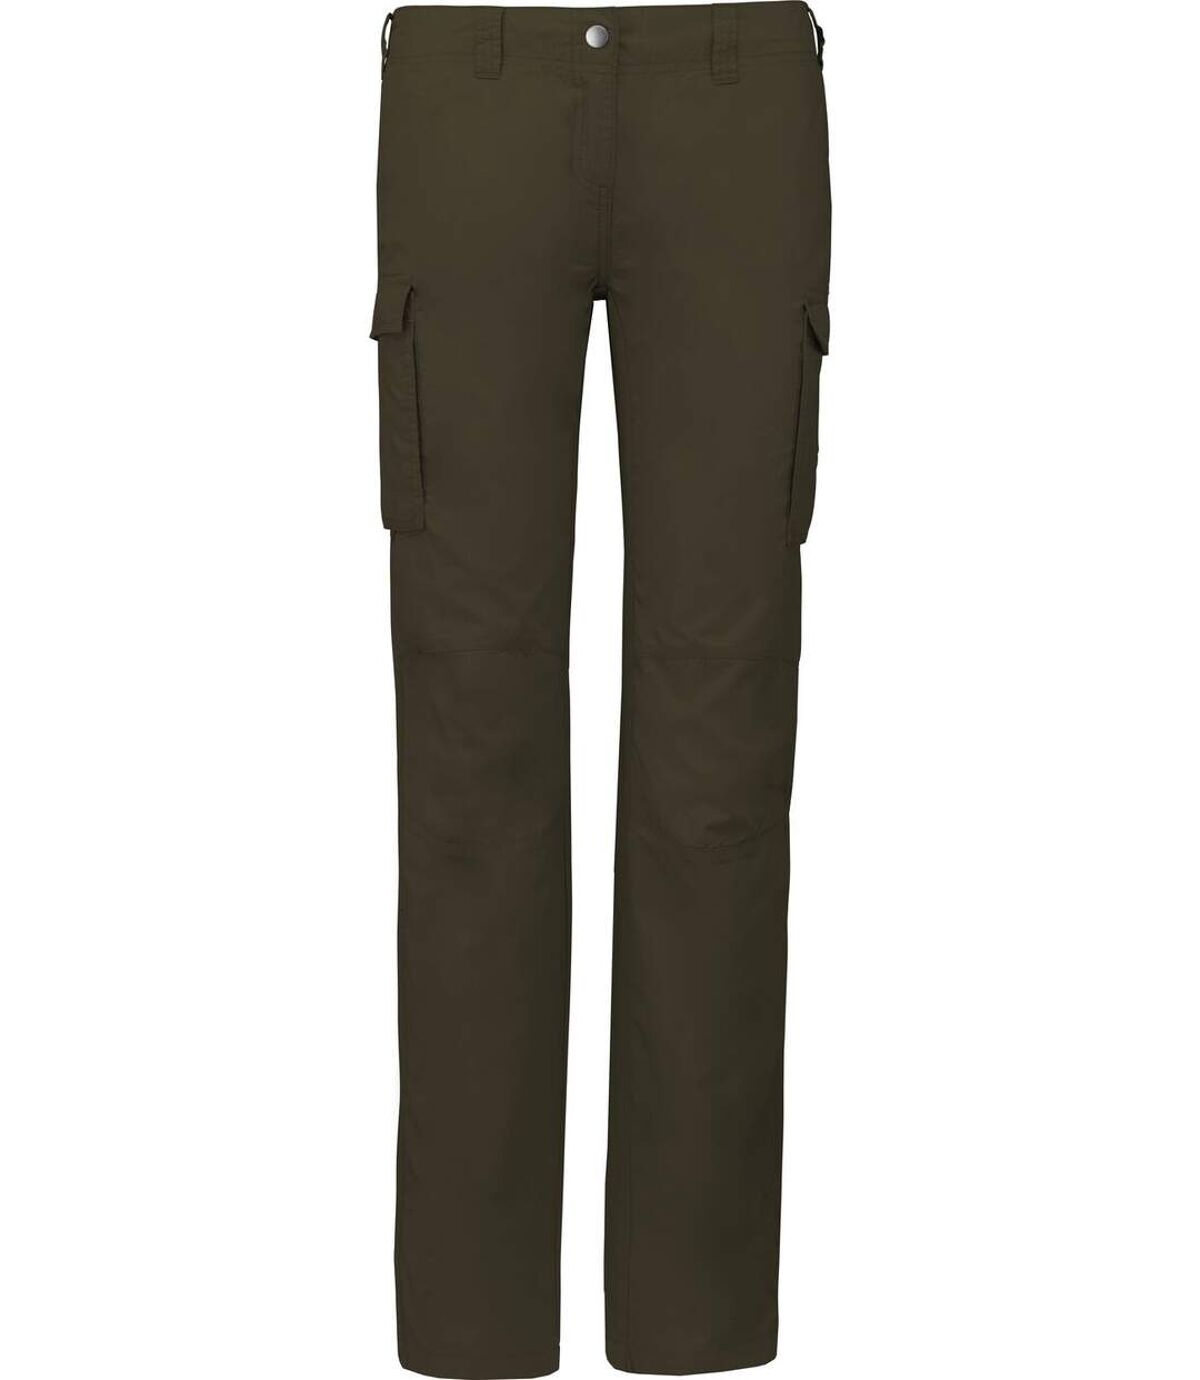 Pantalon léger multipoches pour femme - K746 - vert khaki